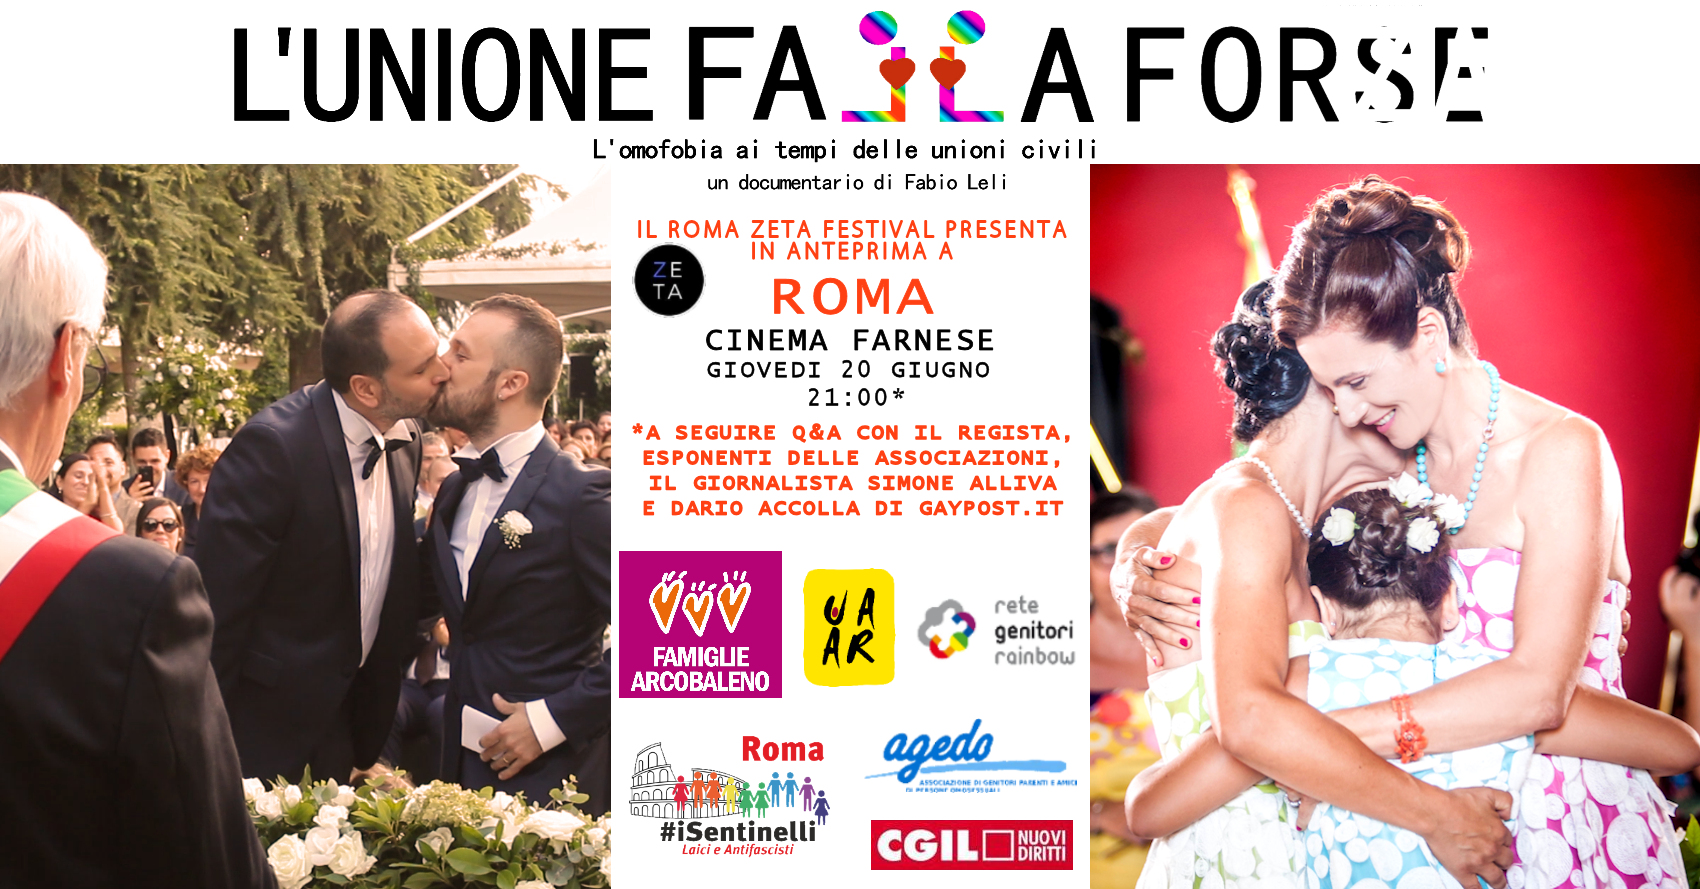 Omofobia e unioni civili: anteprima a Roma del film L'unione falla forse